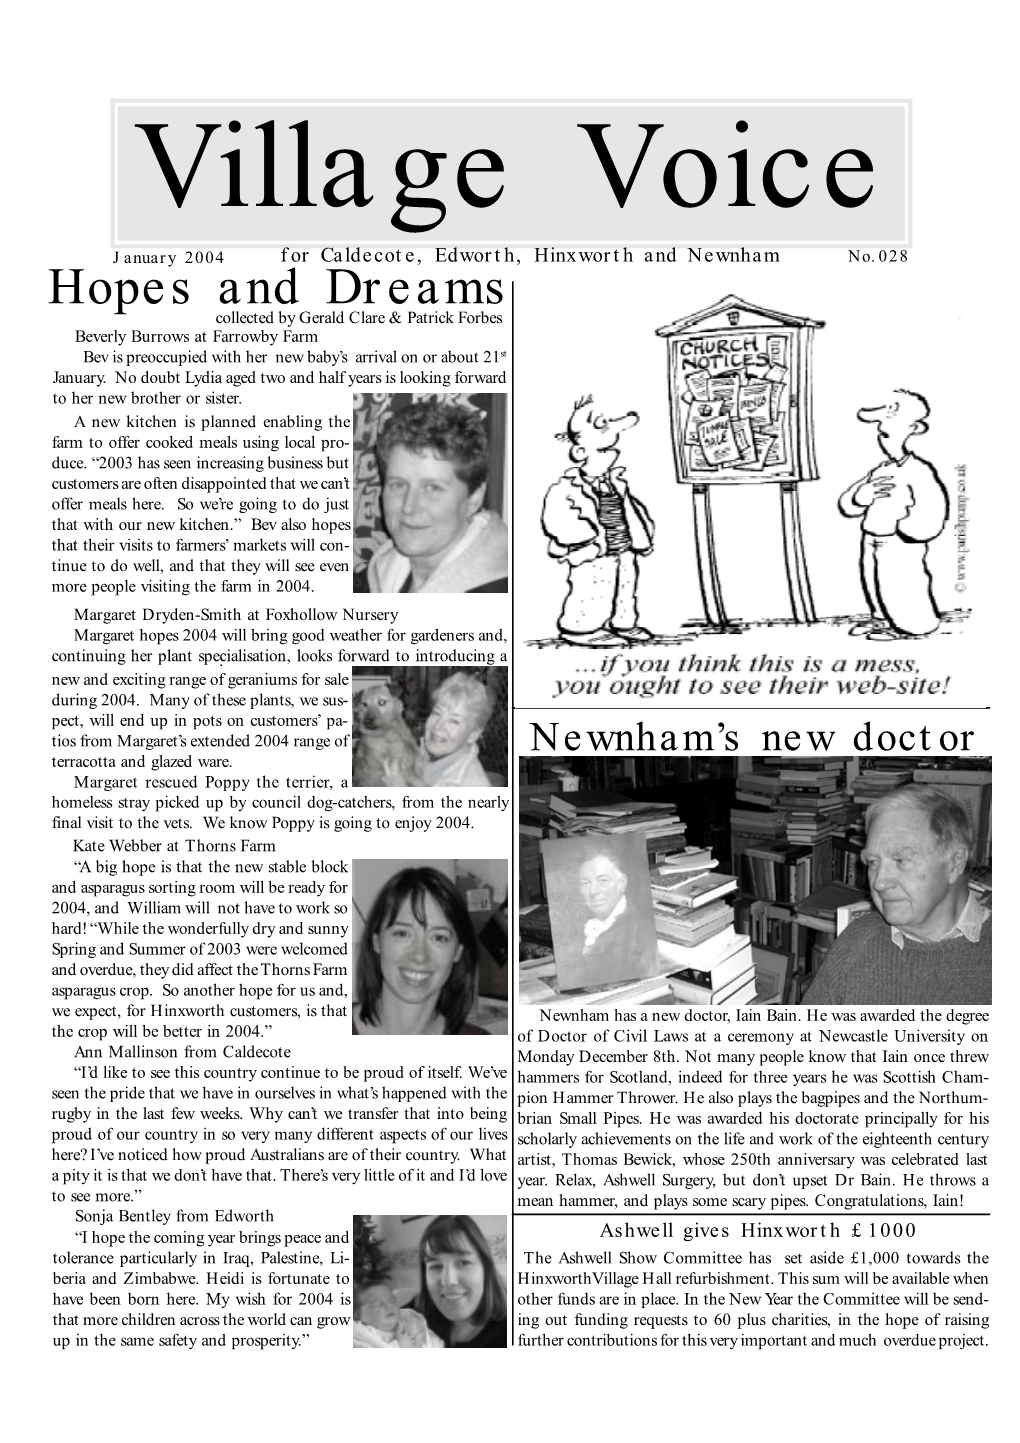 Village Voice Feb 2002